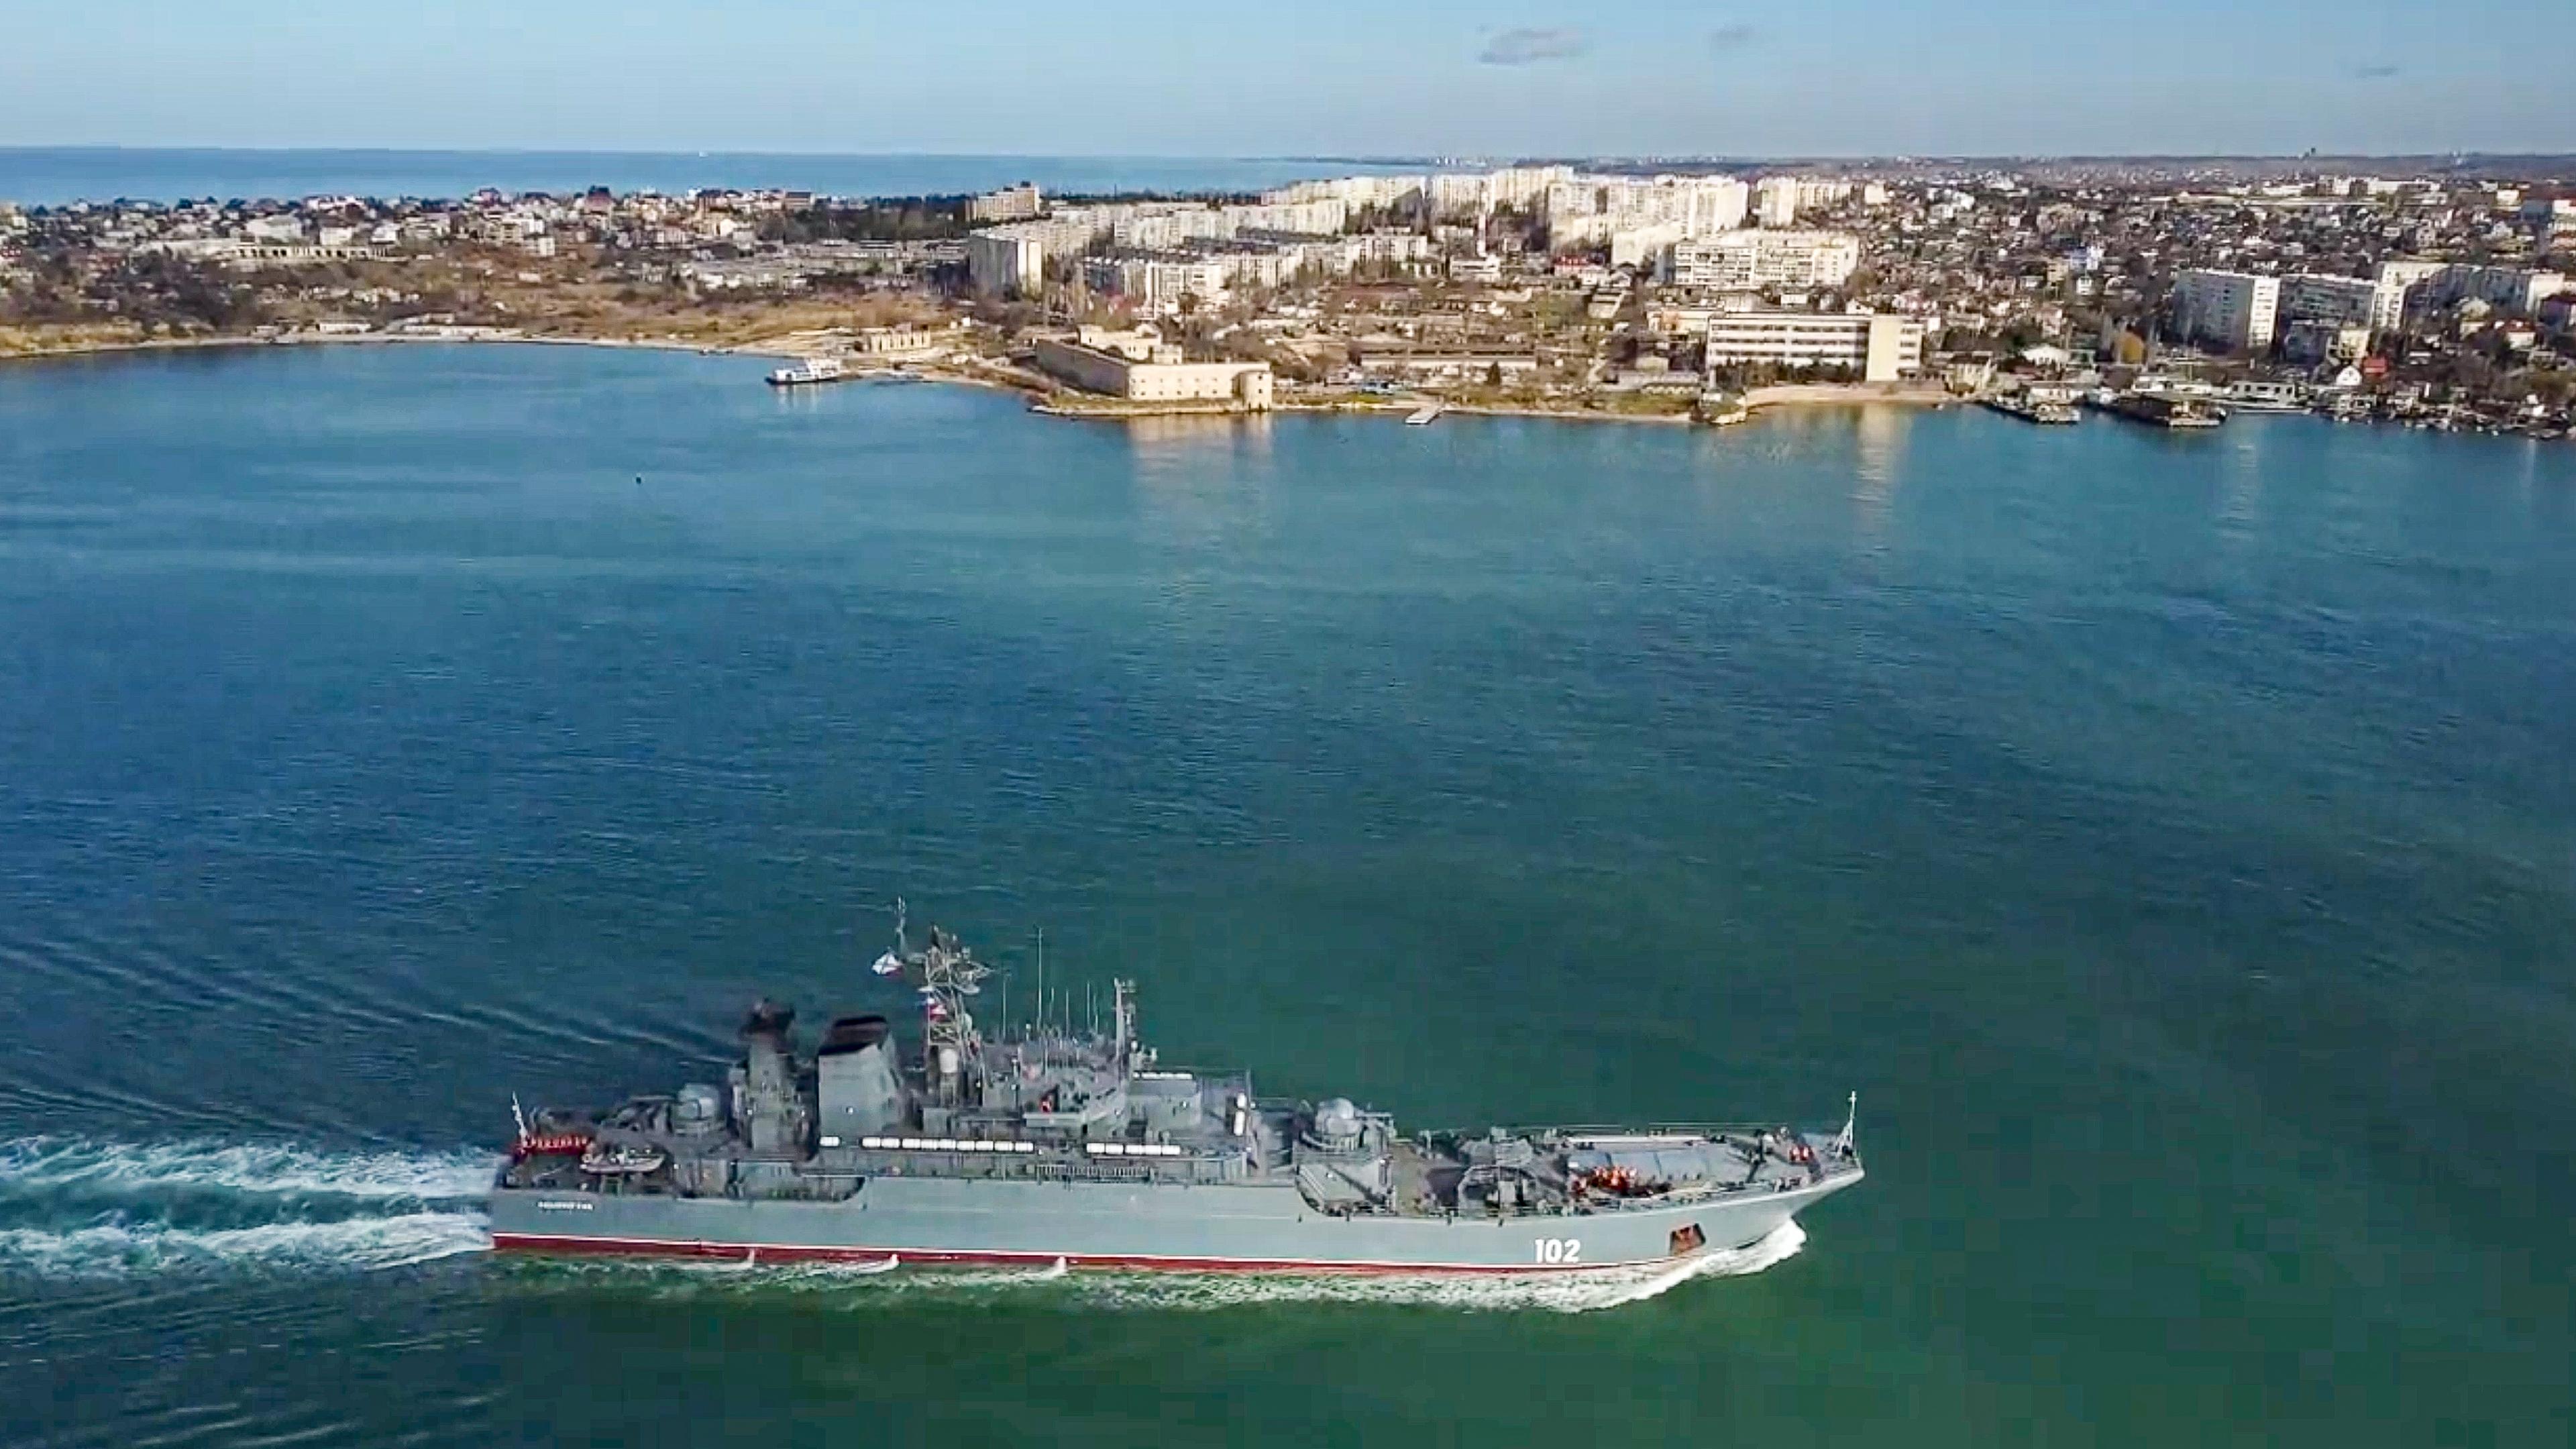 Das Angriffsschiff "Kaliningrad" der russischen Marine läuft in den Hafen von Sewastopol auf der Krim ein